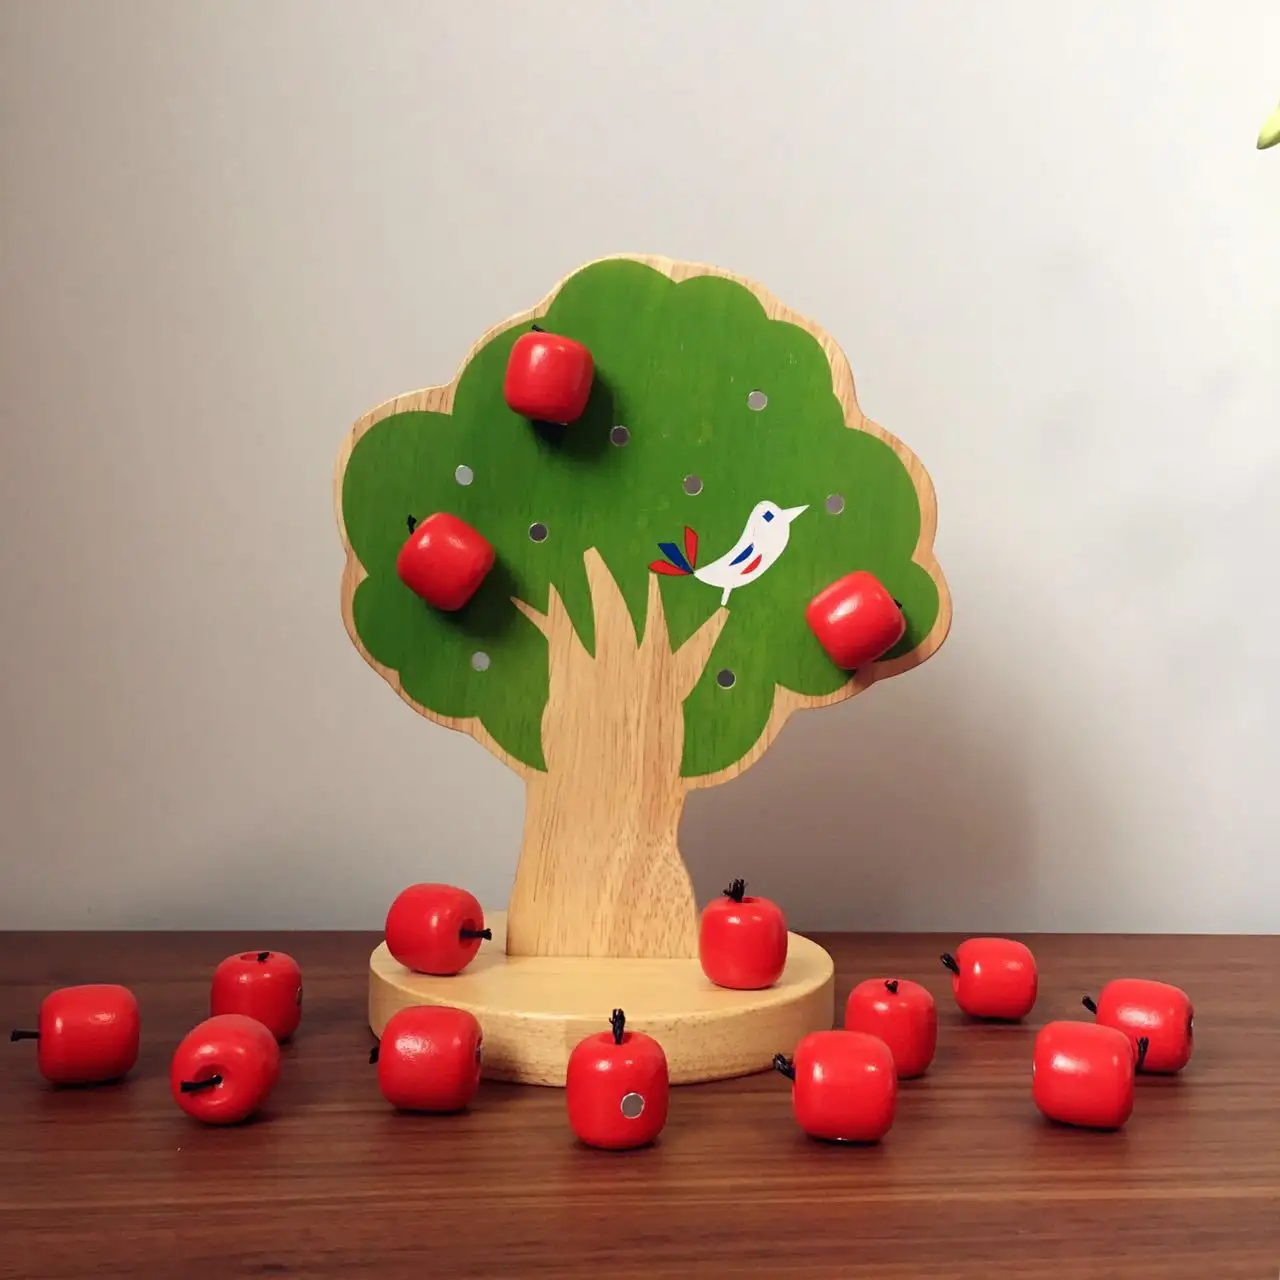 لعبة مونتيسوري ، خشبية تعليمية ، للأطفال, لعبة خشبية تعليمية ، شجرة التفاح ، مطابقة مع مغناطيس للطفل الصغير